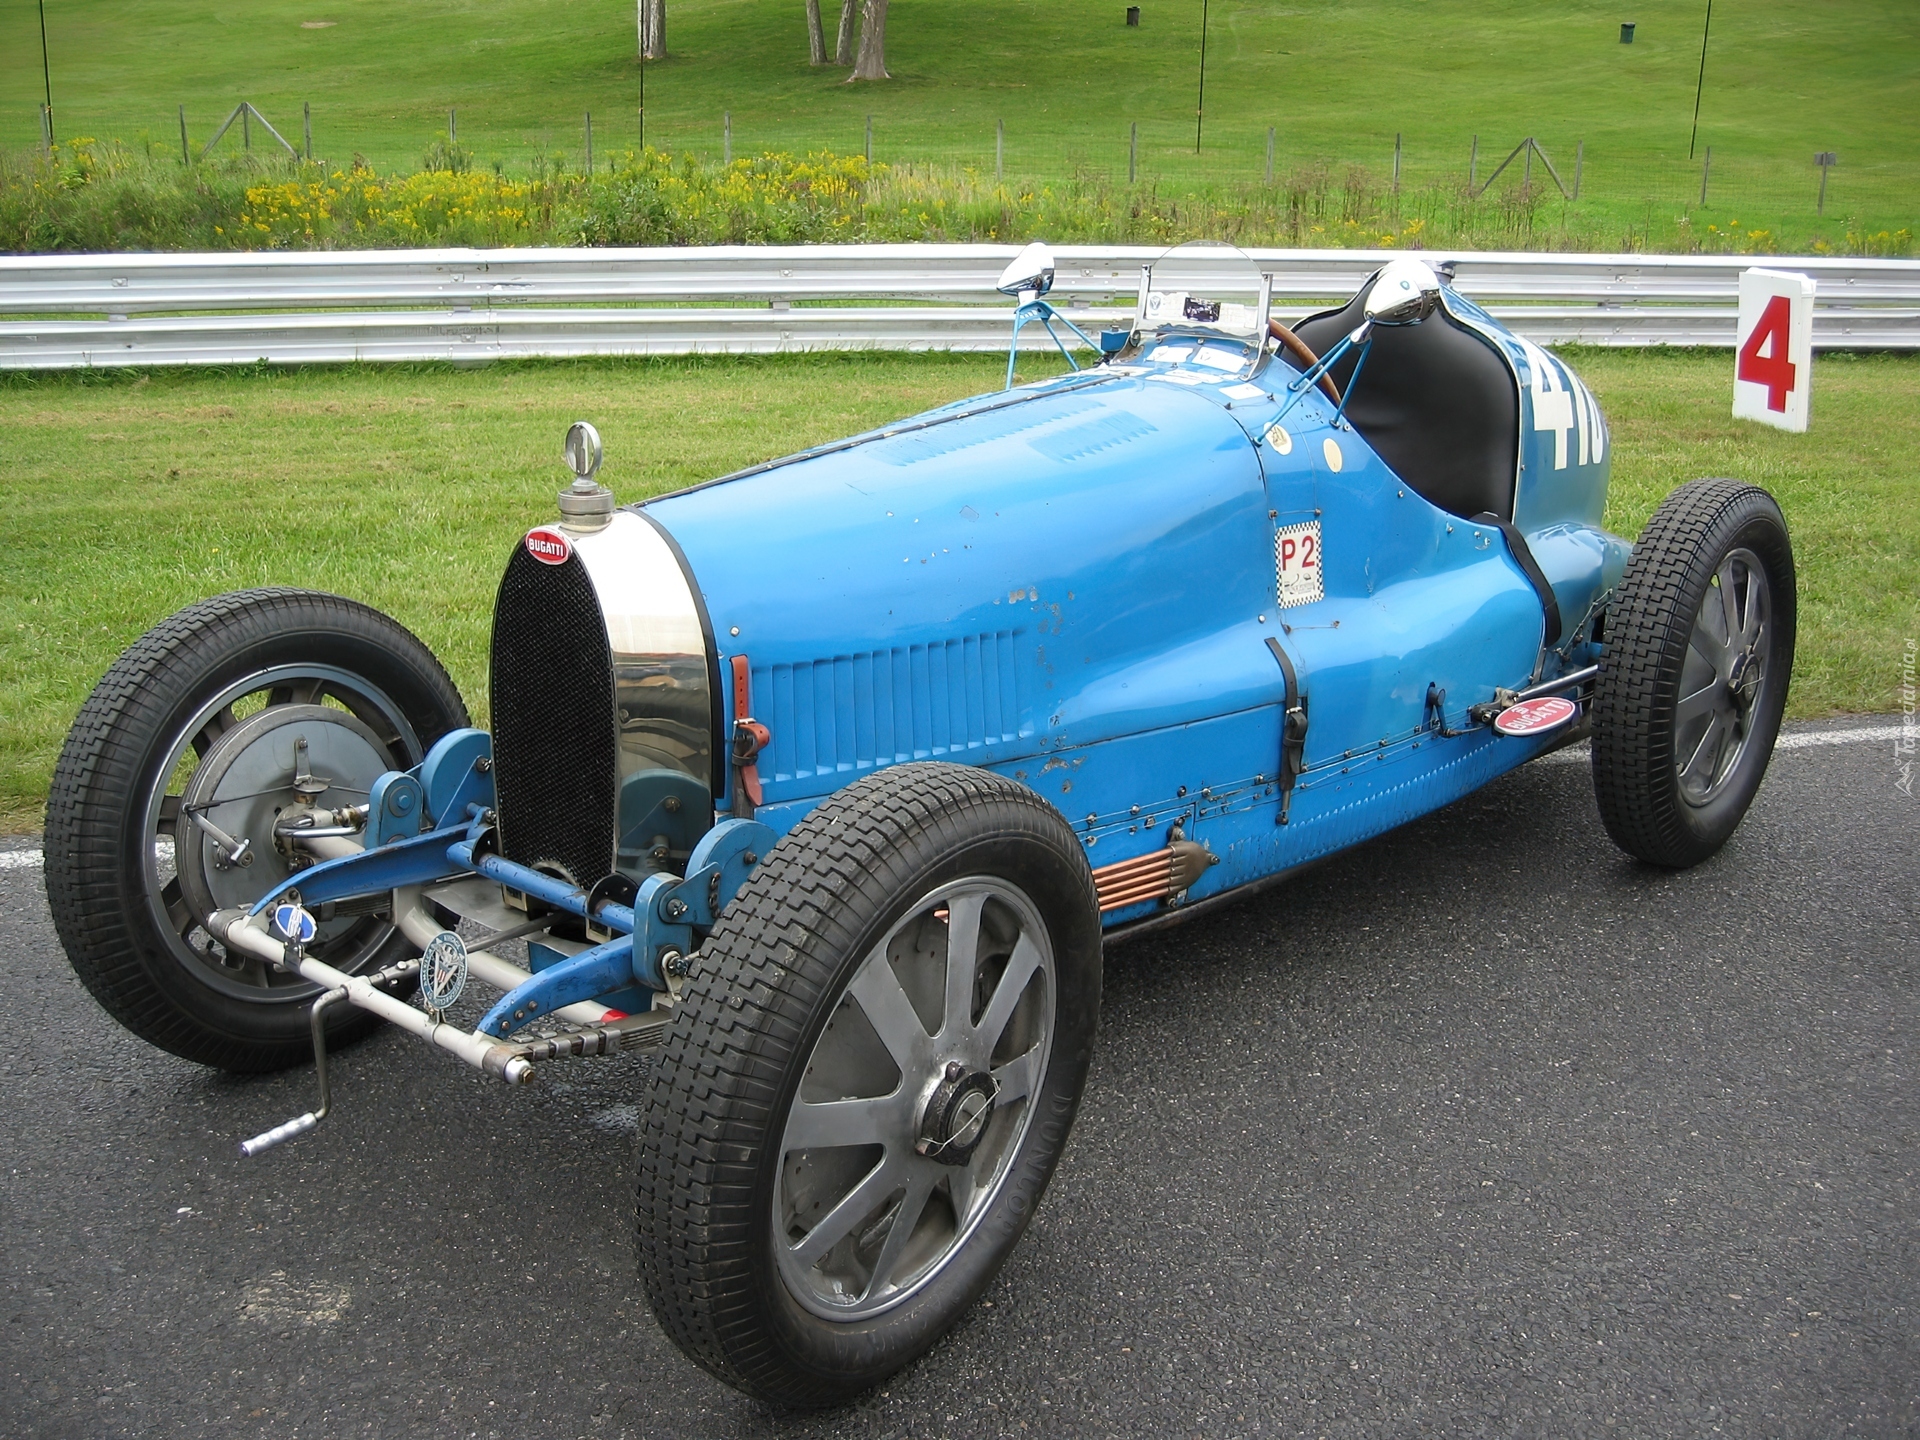 Bugatti 32. Bugatti Type 35 c. Bugatti Type 35c 1928. 1924—1929 Bugatti Type 35. Bugatti t35 c.